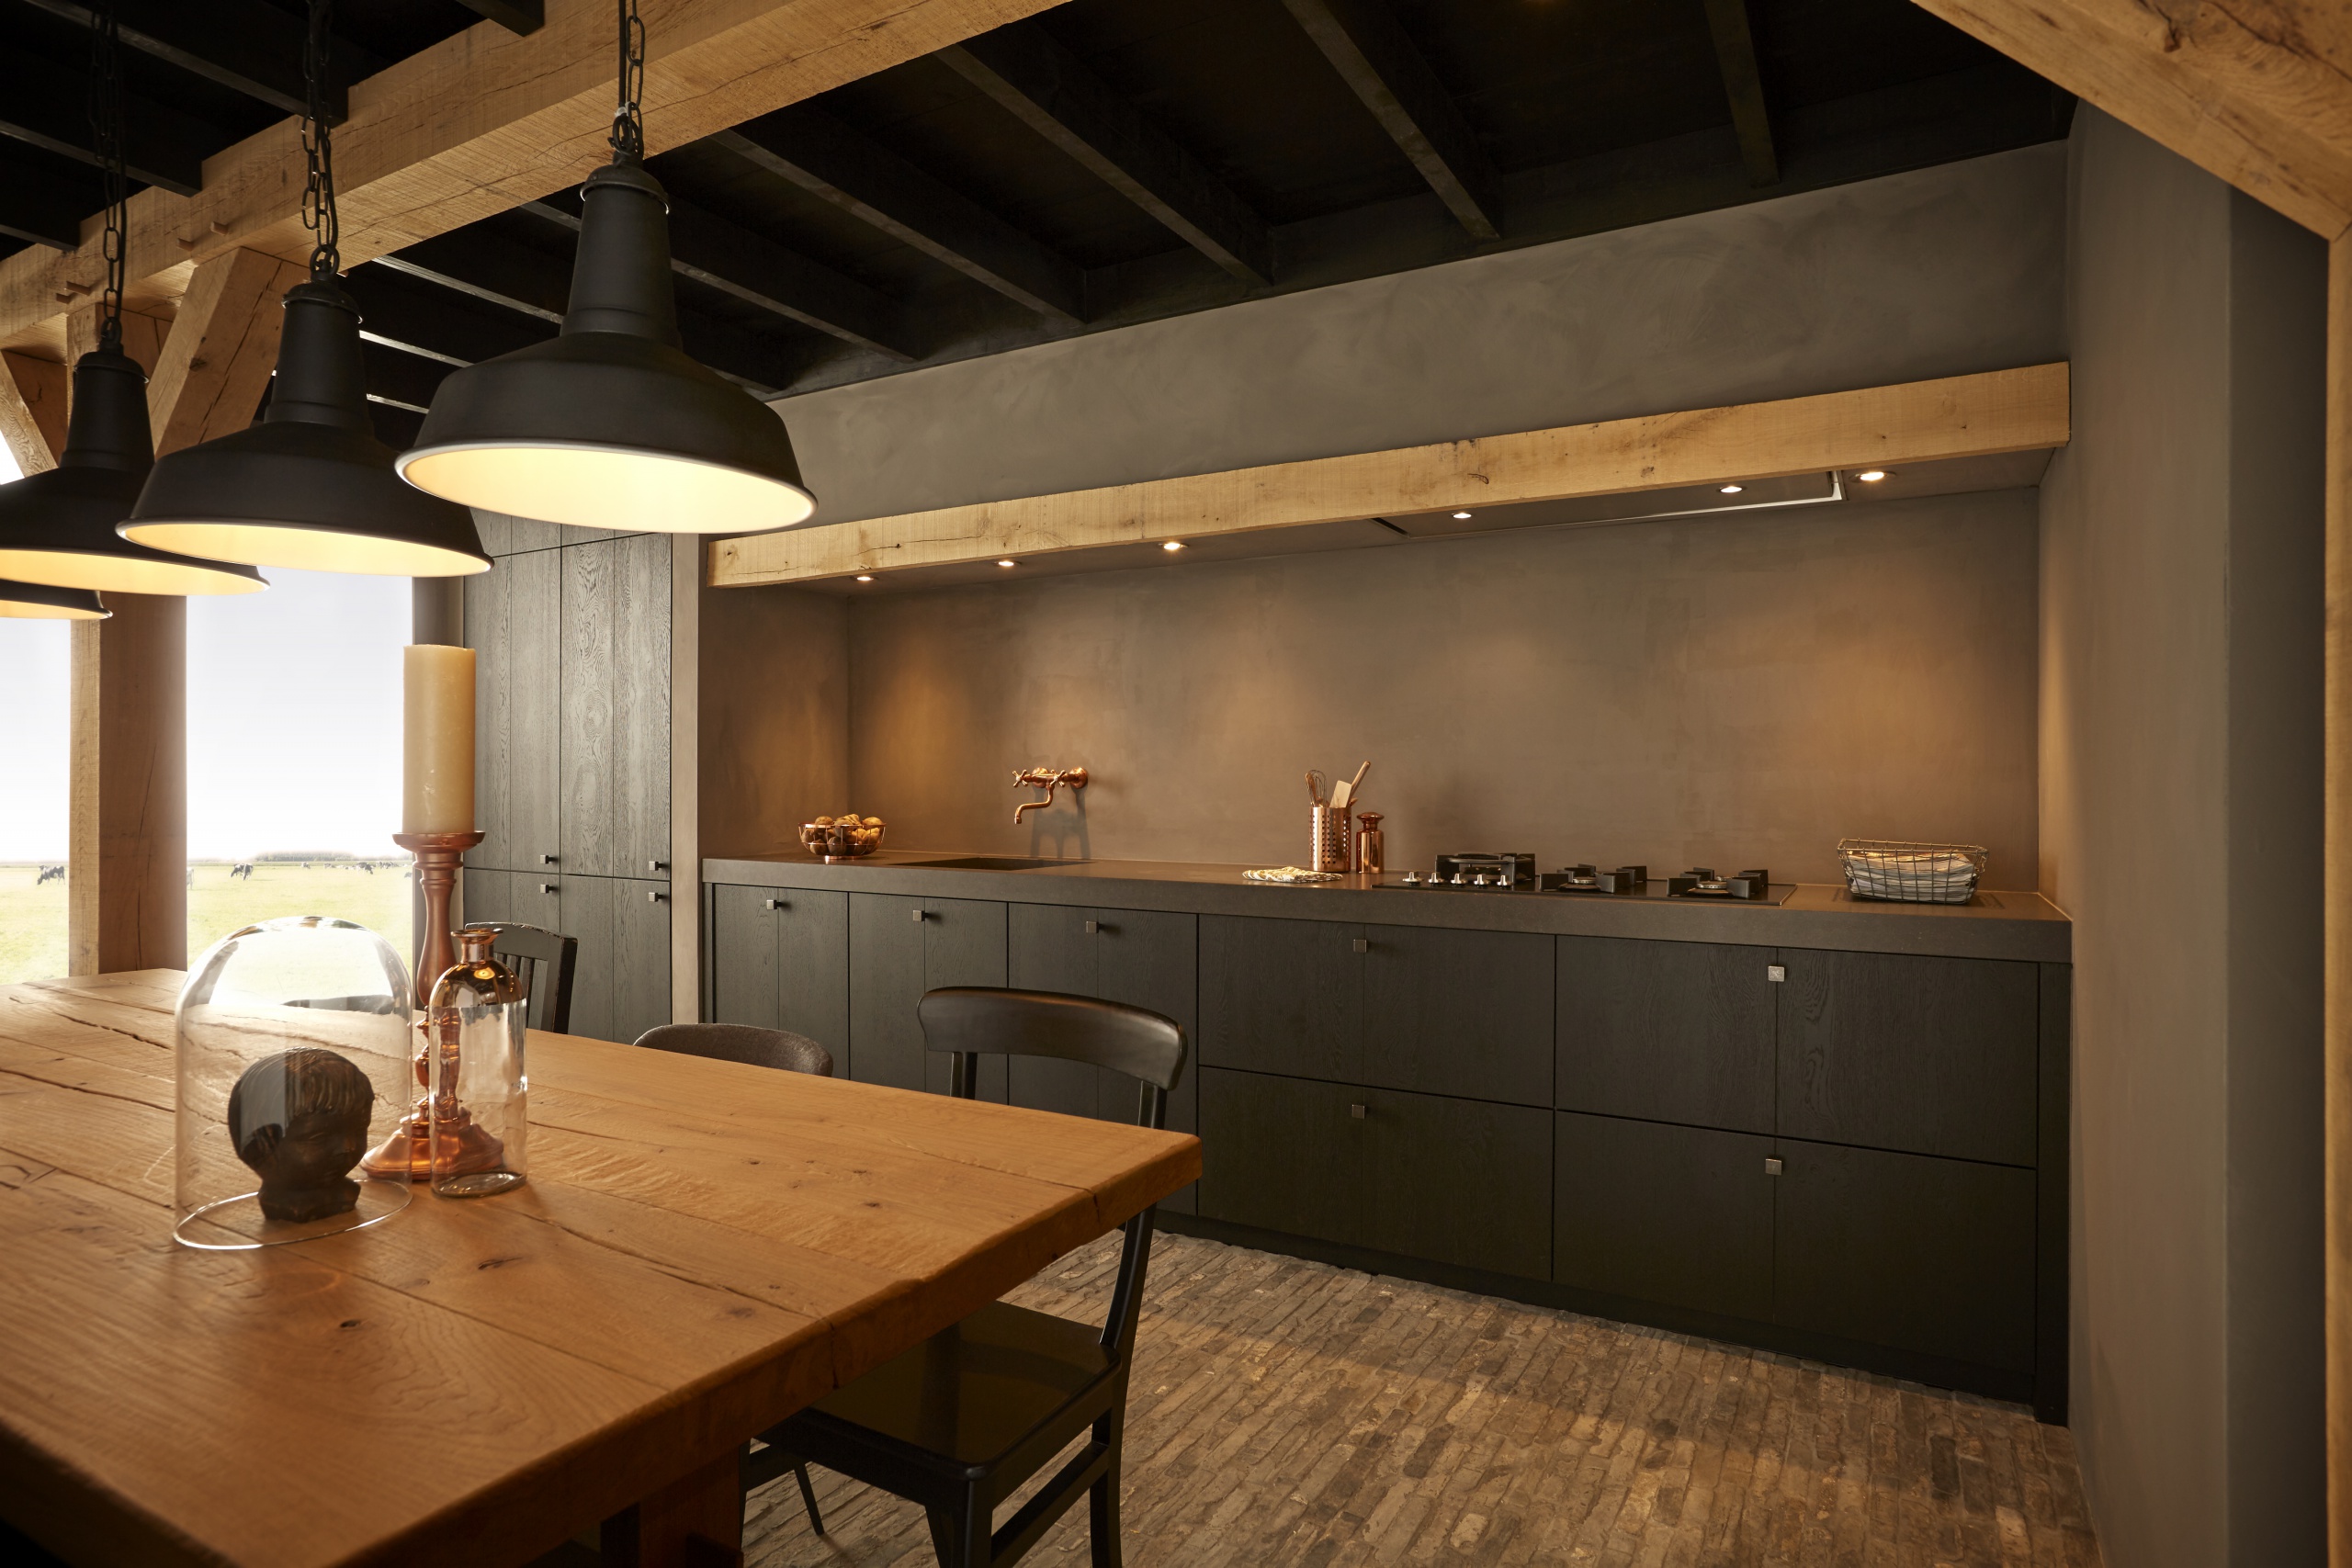 Keller landelijk modern keuken uitgevoerd in Zuylen NCS kleur zwart